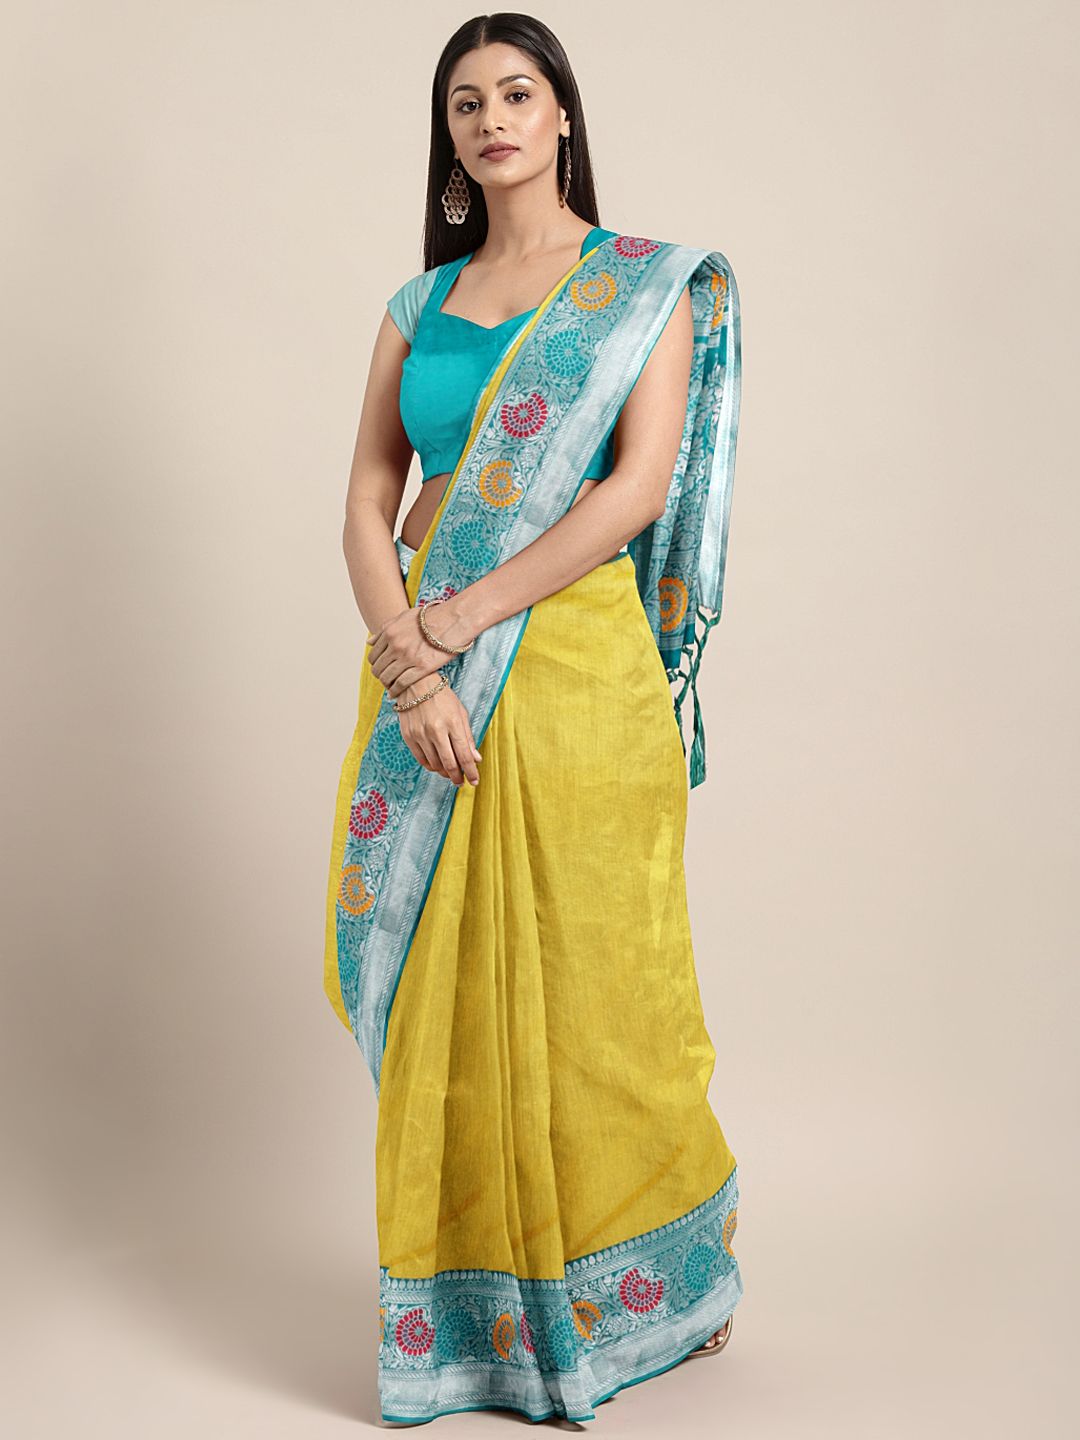 Varkala Silk Sarees Yellow & Teal Green Silk Cotton Solid Banarasi Saree Price in India